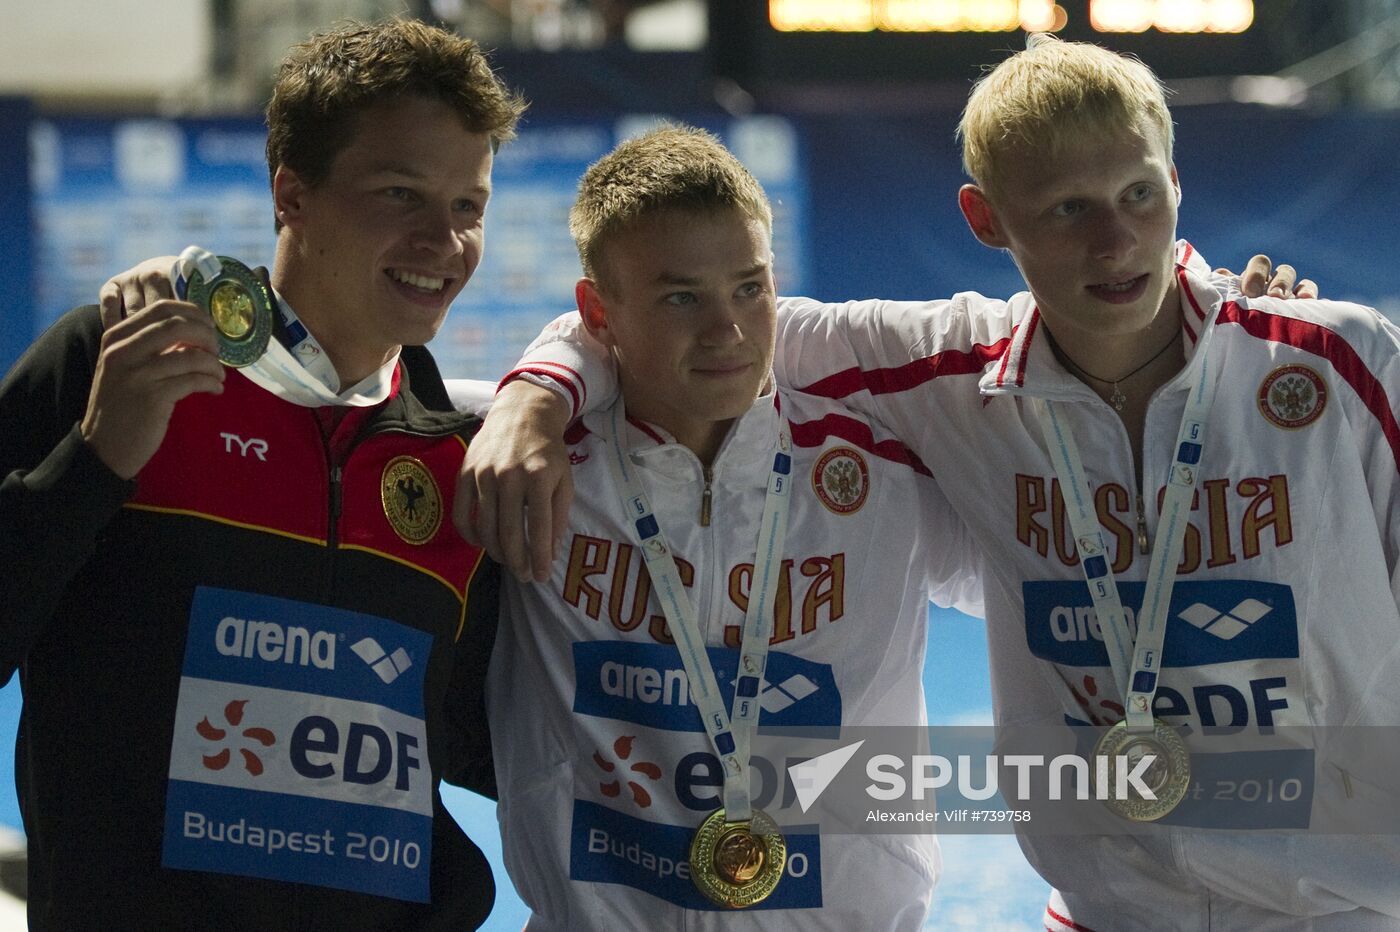 2010 European Aquatics Championships